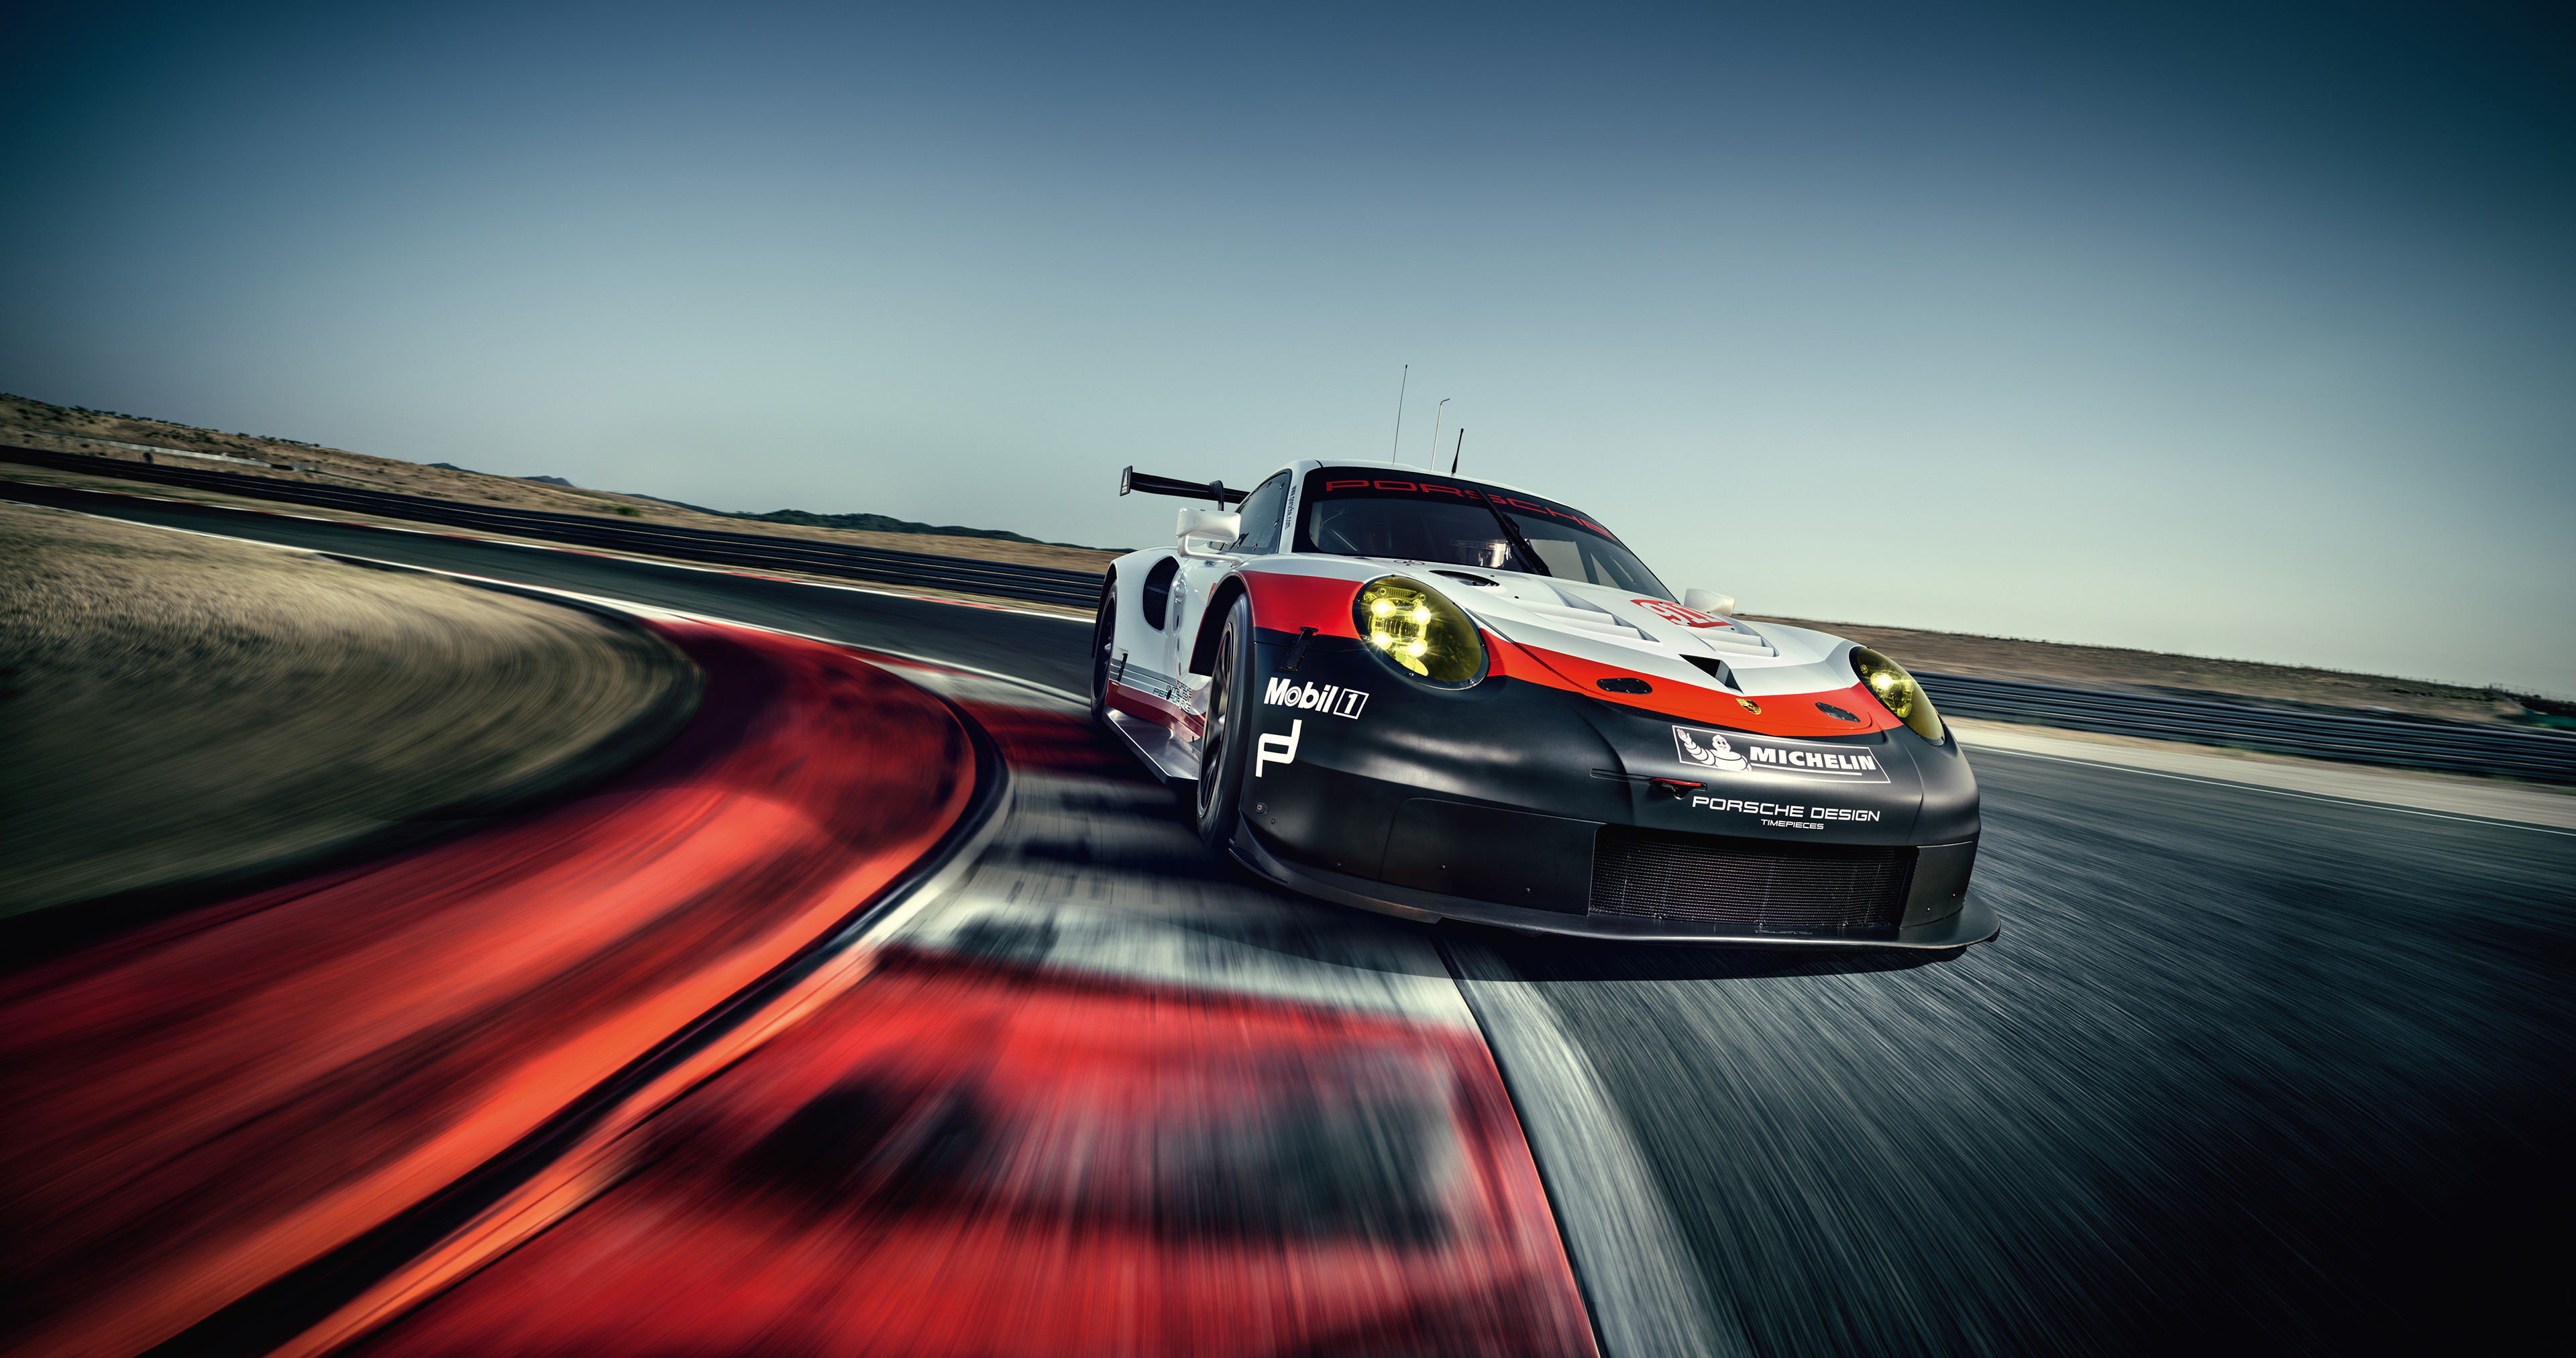 Wallpaper Porsche 911 Rsr, 2017, Racing, Automotive - Porsche 911 Rsr 2017 , HD Wallpaper & Backgrounds